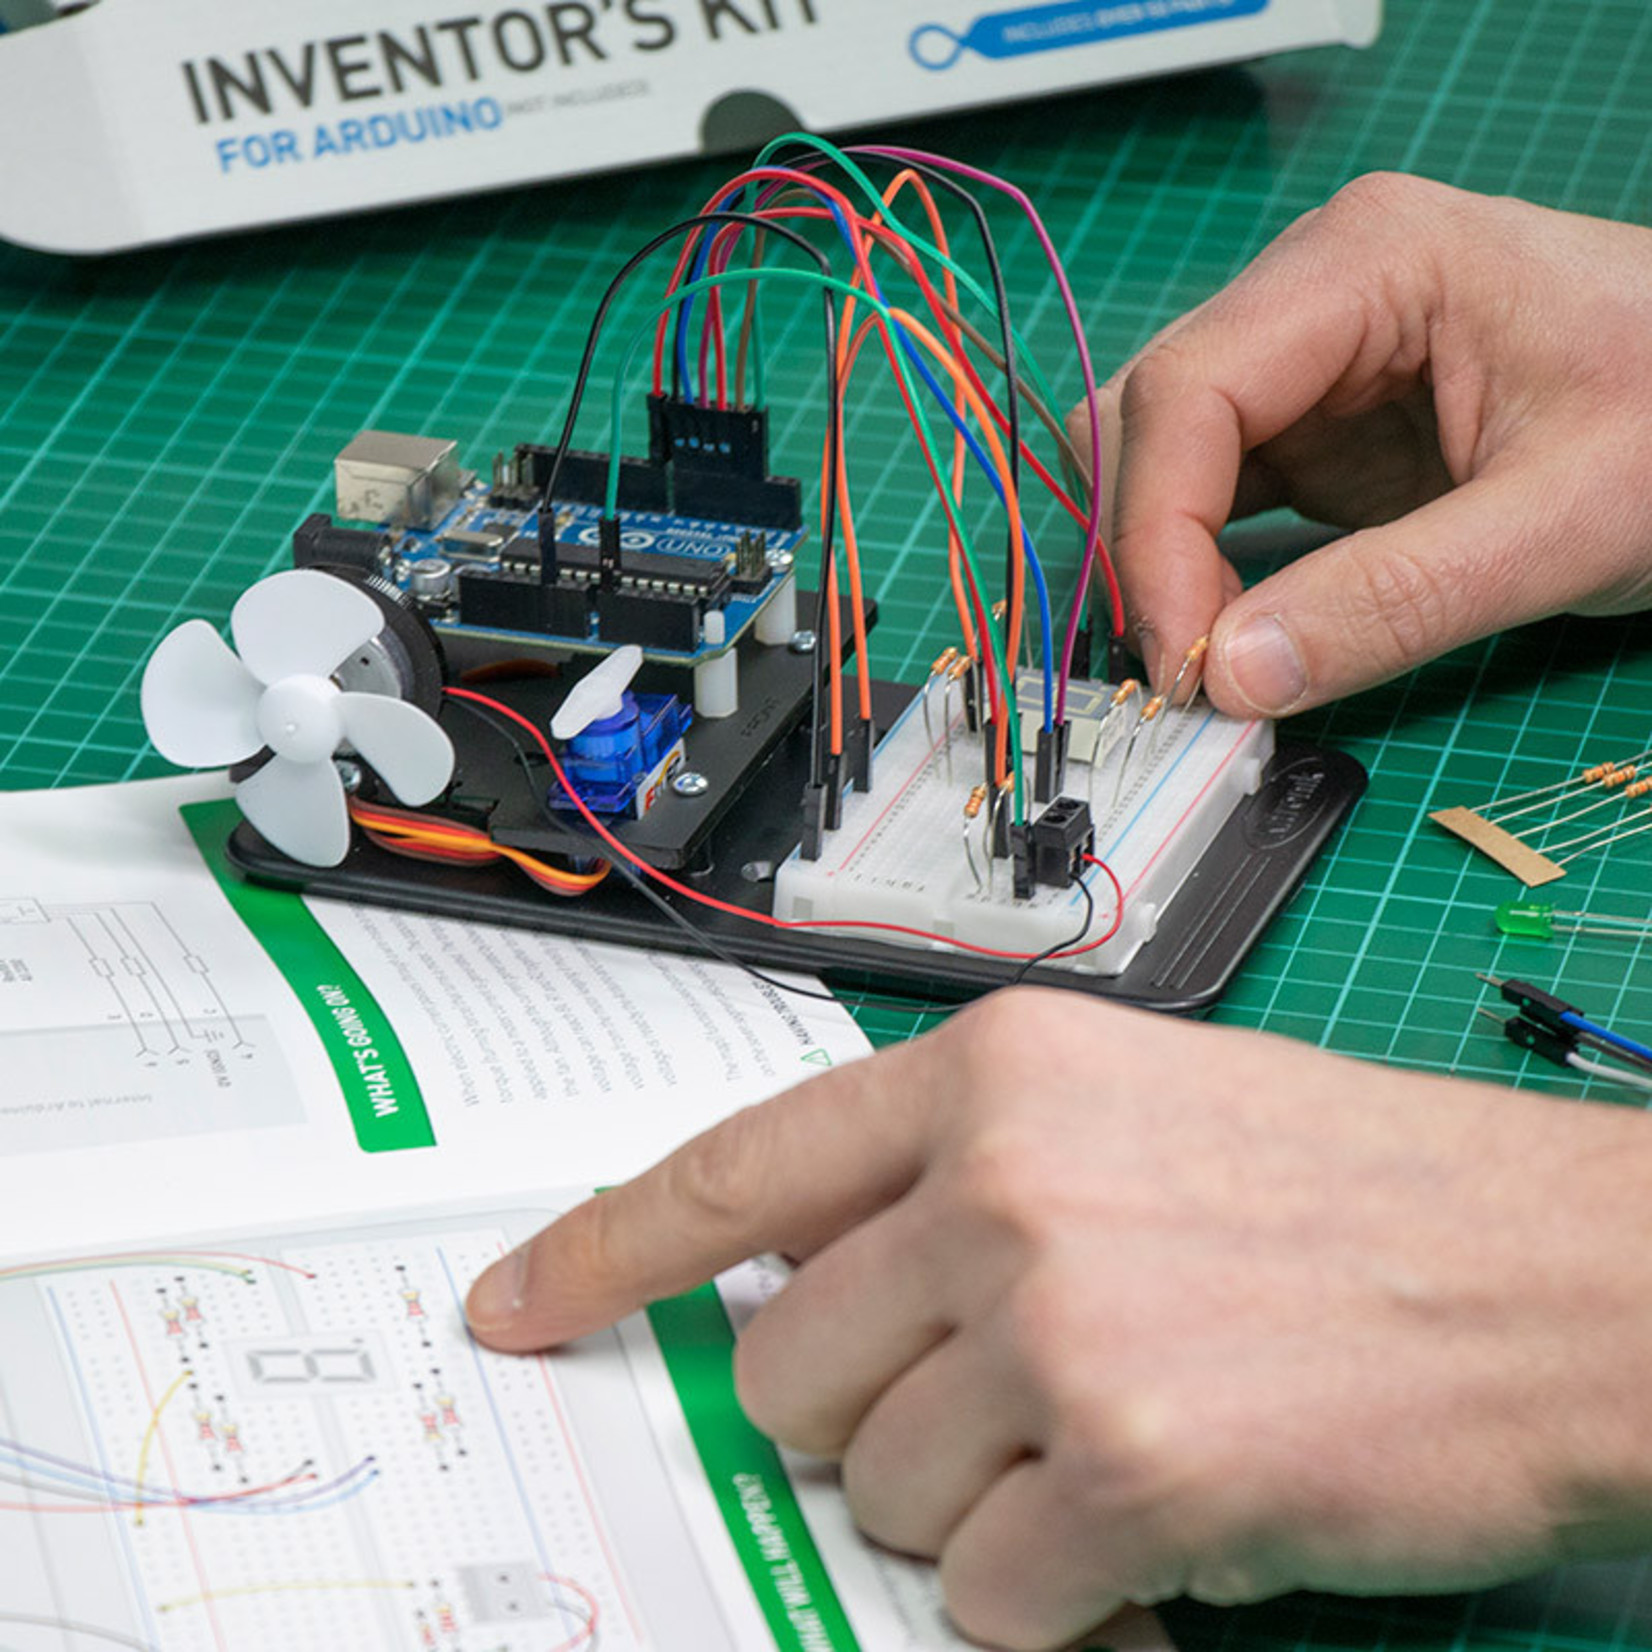 Kitronik Uitvinderskit voor Arduino